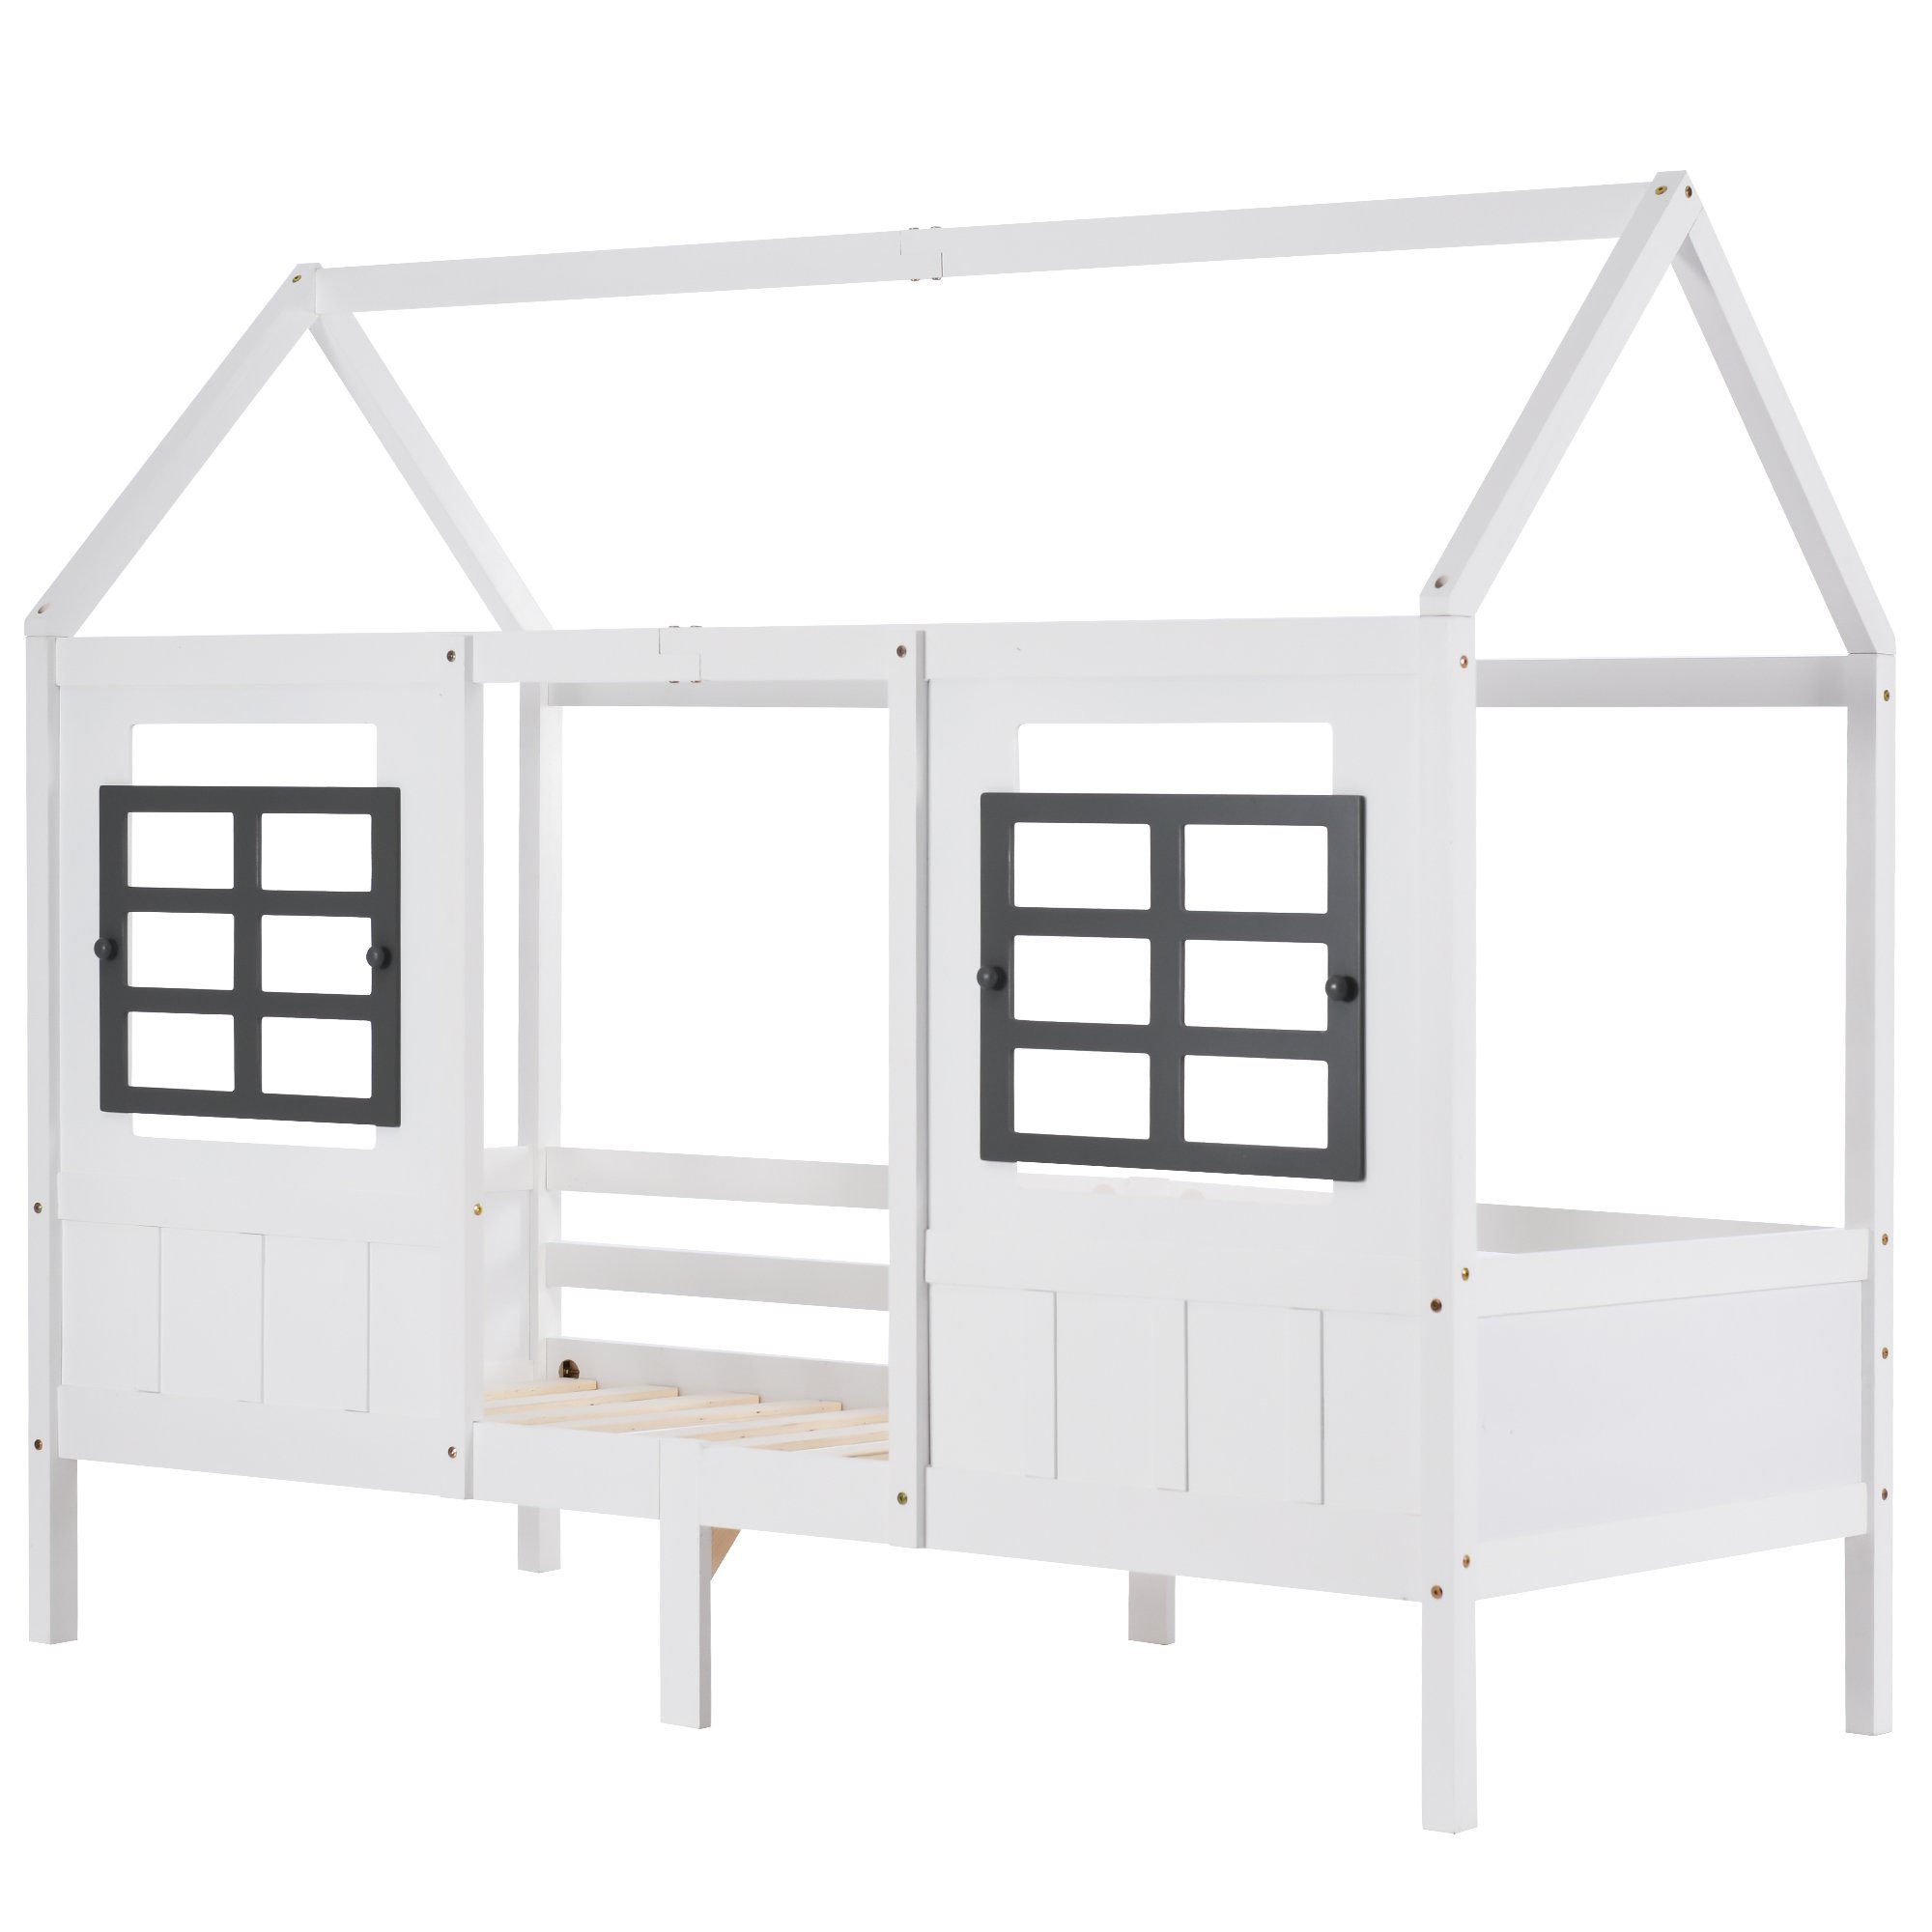 Kiefer Kinderbett Hausbett Fenstern Hausbett Tagesbett 200x90cm mit Gotagee Einzelbett